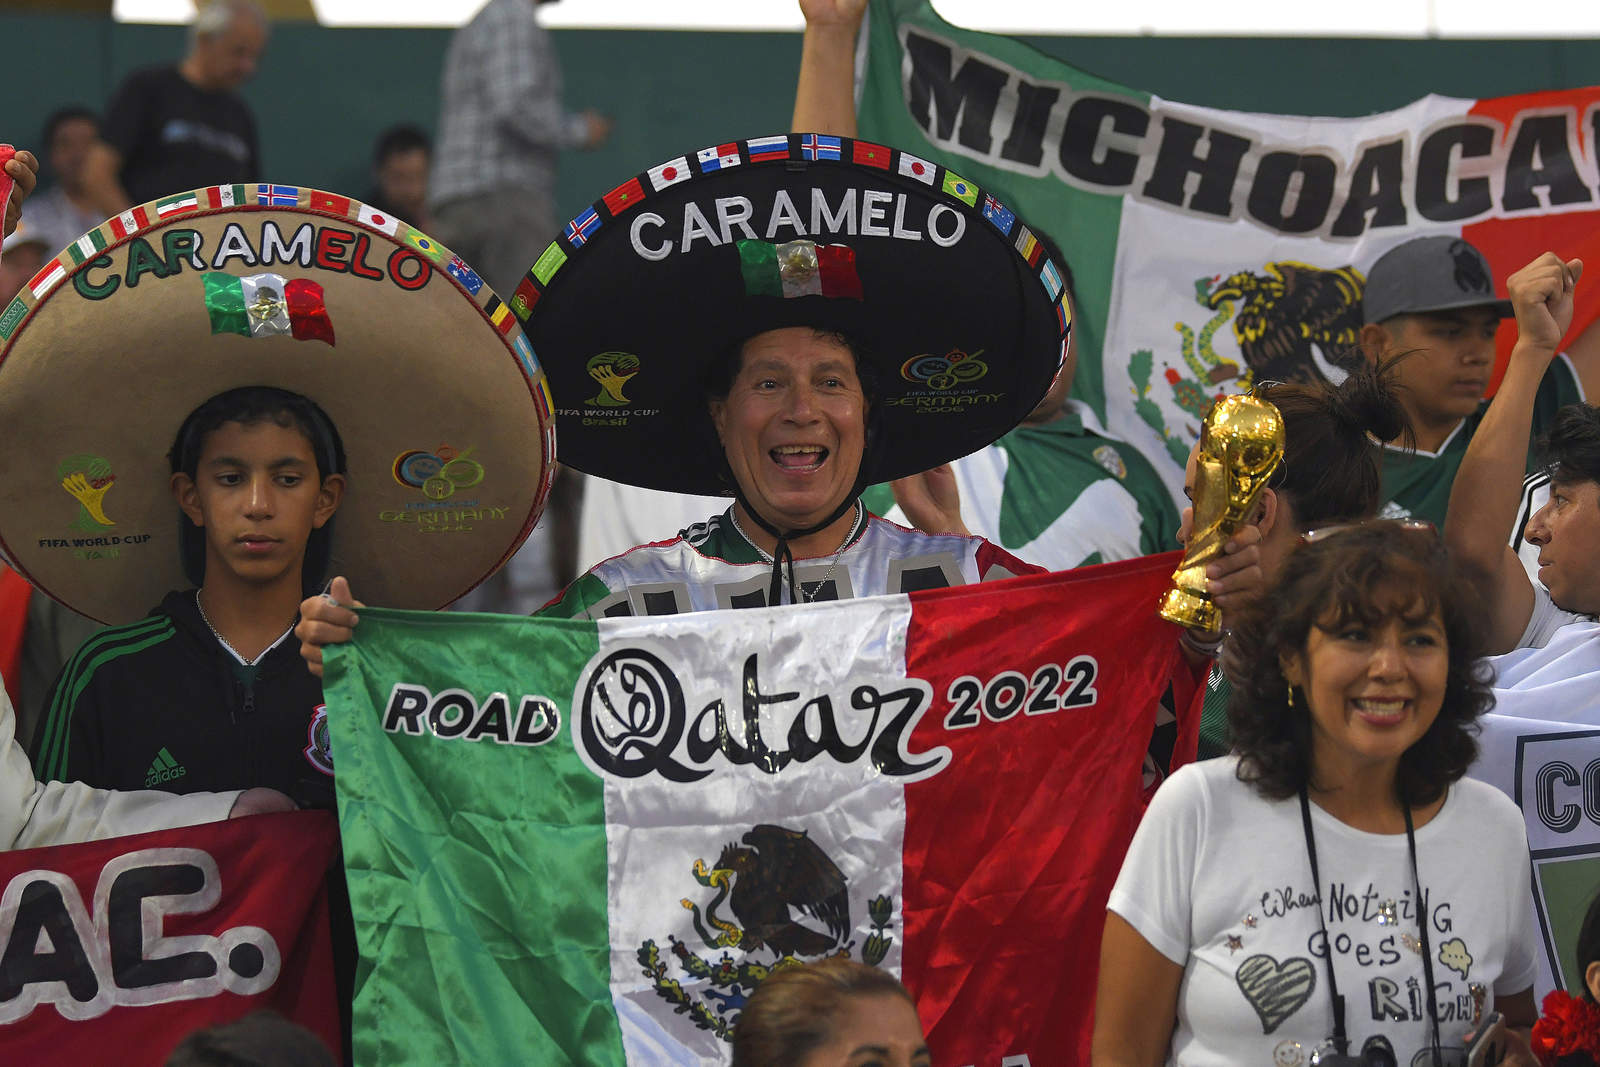 Los aficionados mexicanos siempre están presentes y con la ilusión de ver a su equipo en un Mundial de futbol. (Jam Media)